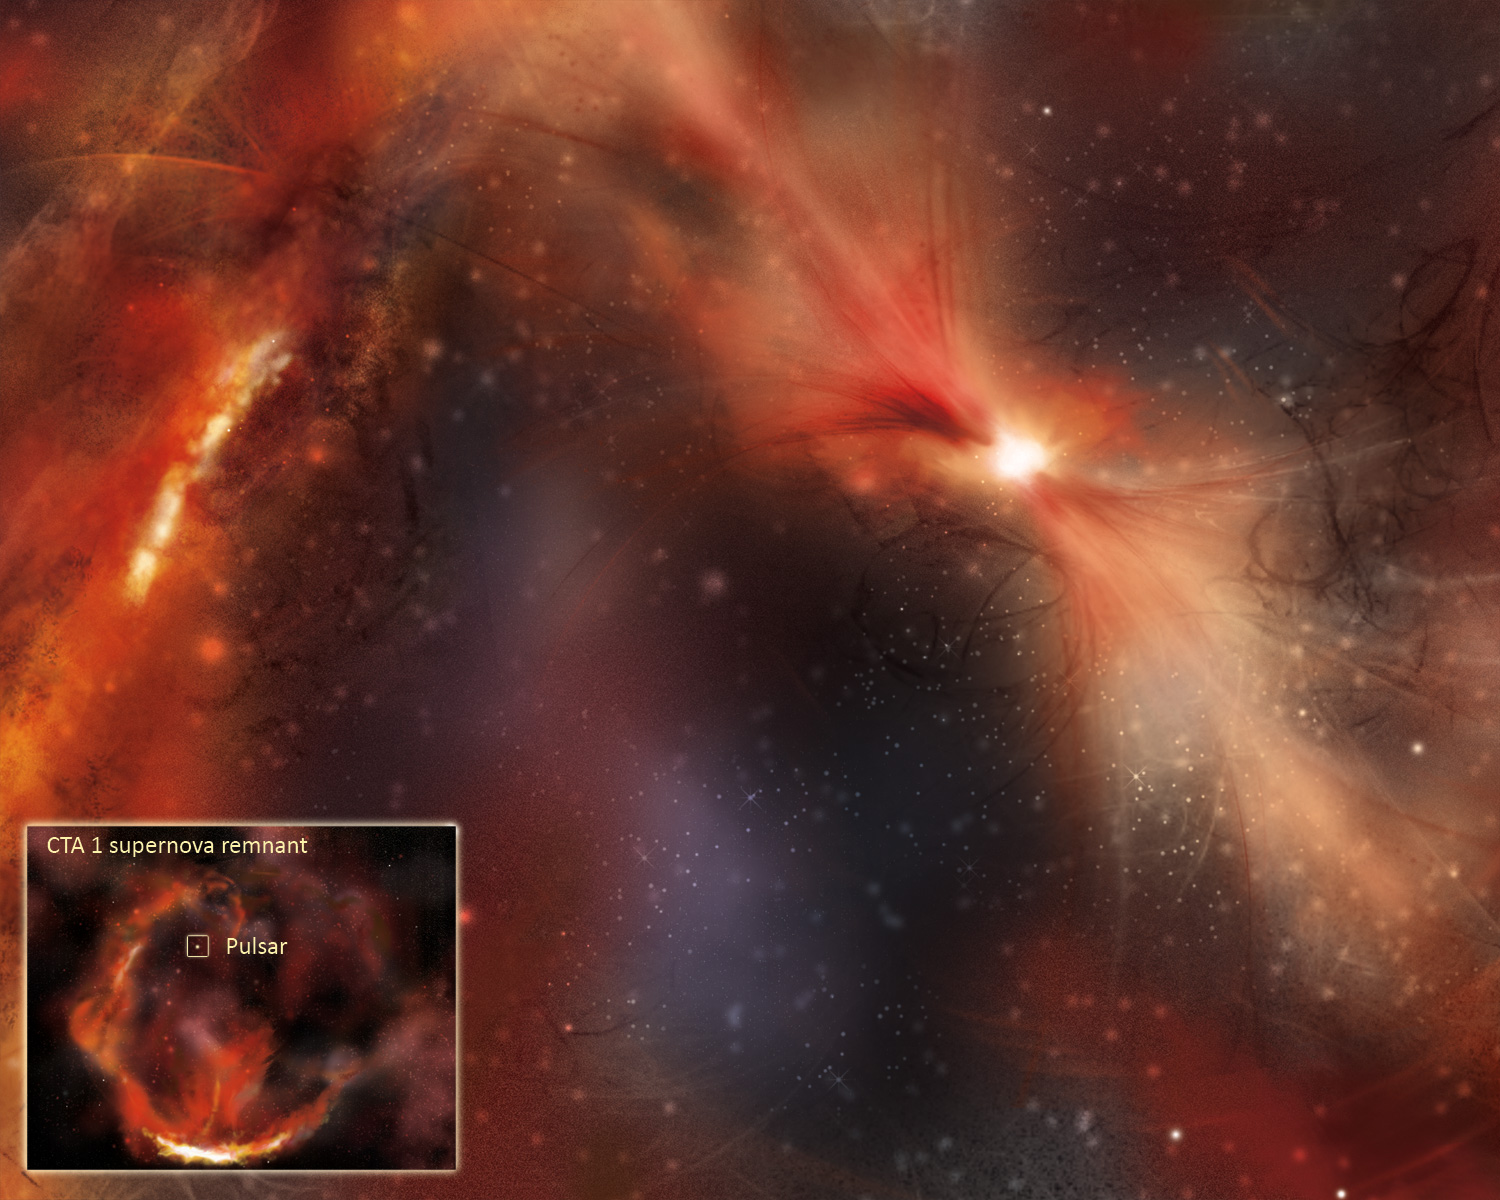 CTA 1 supernova remnant and dark pulsar